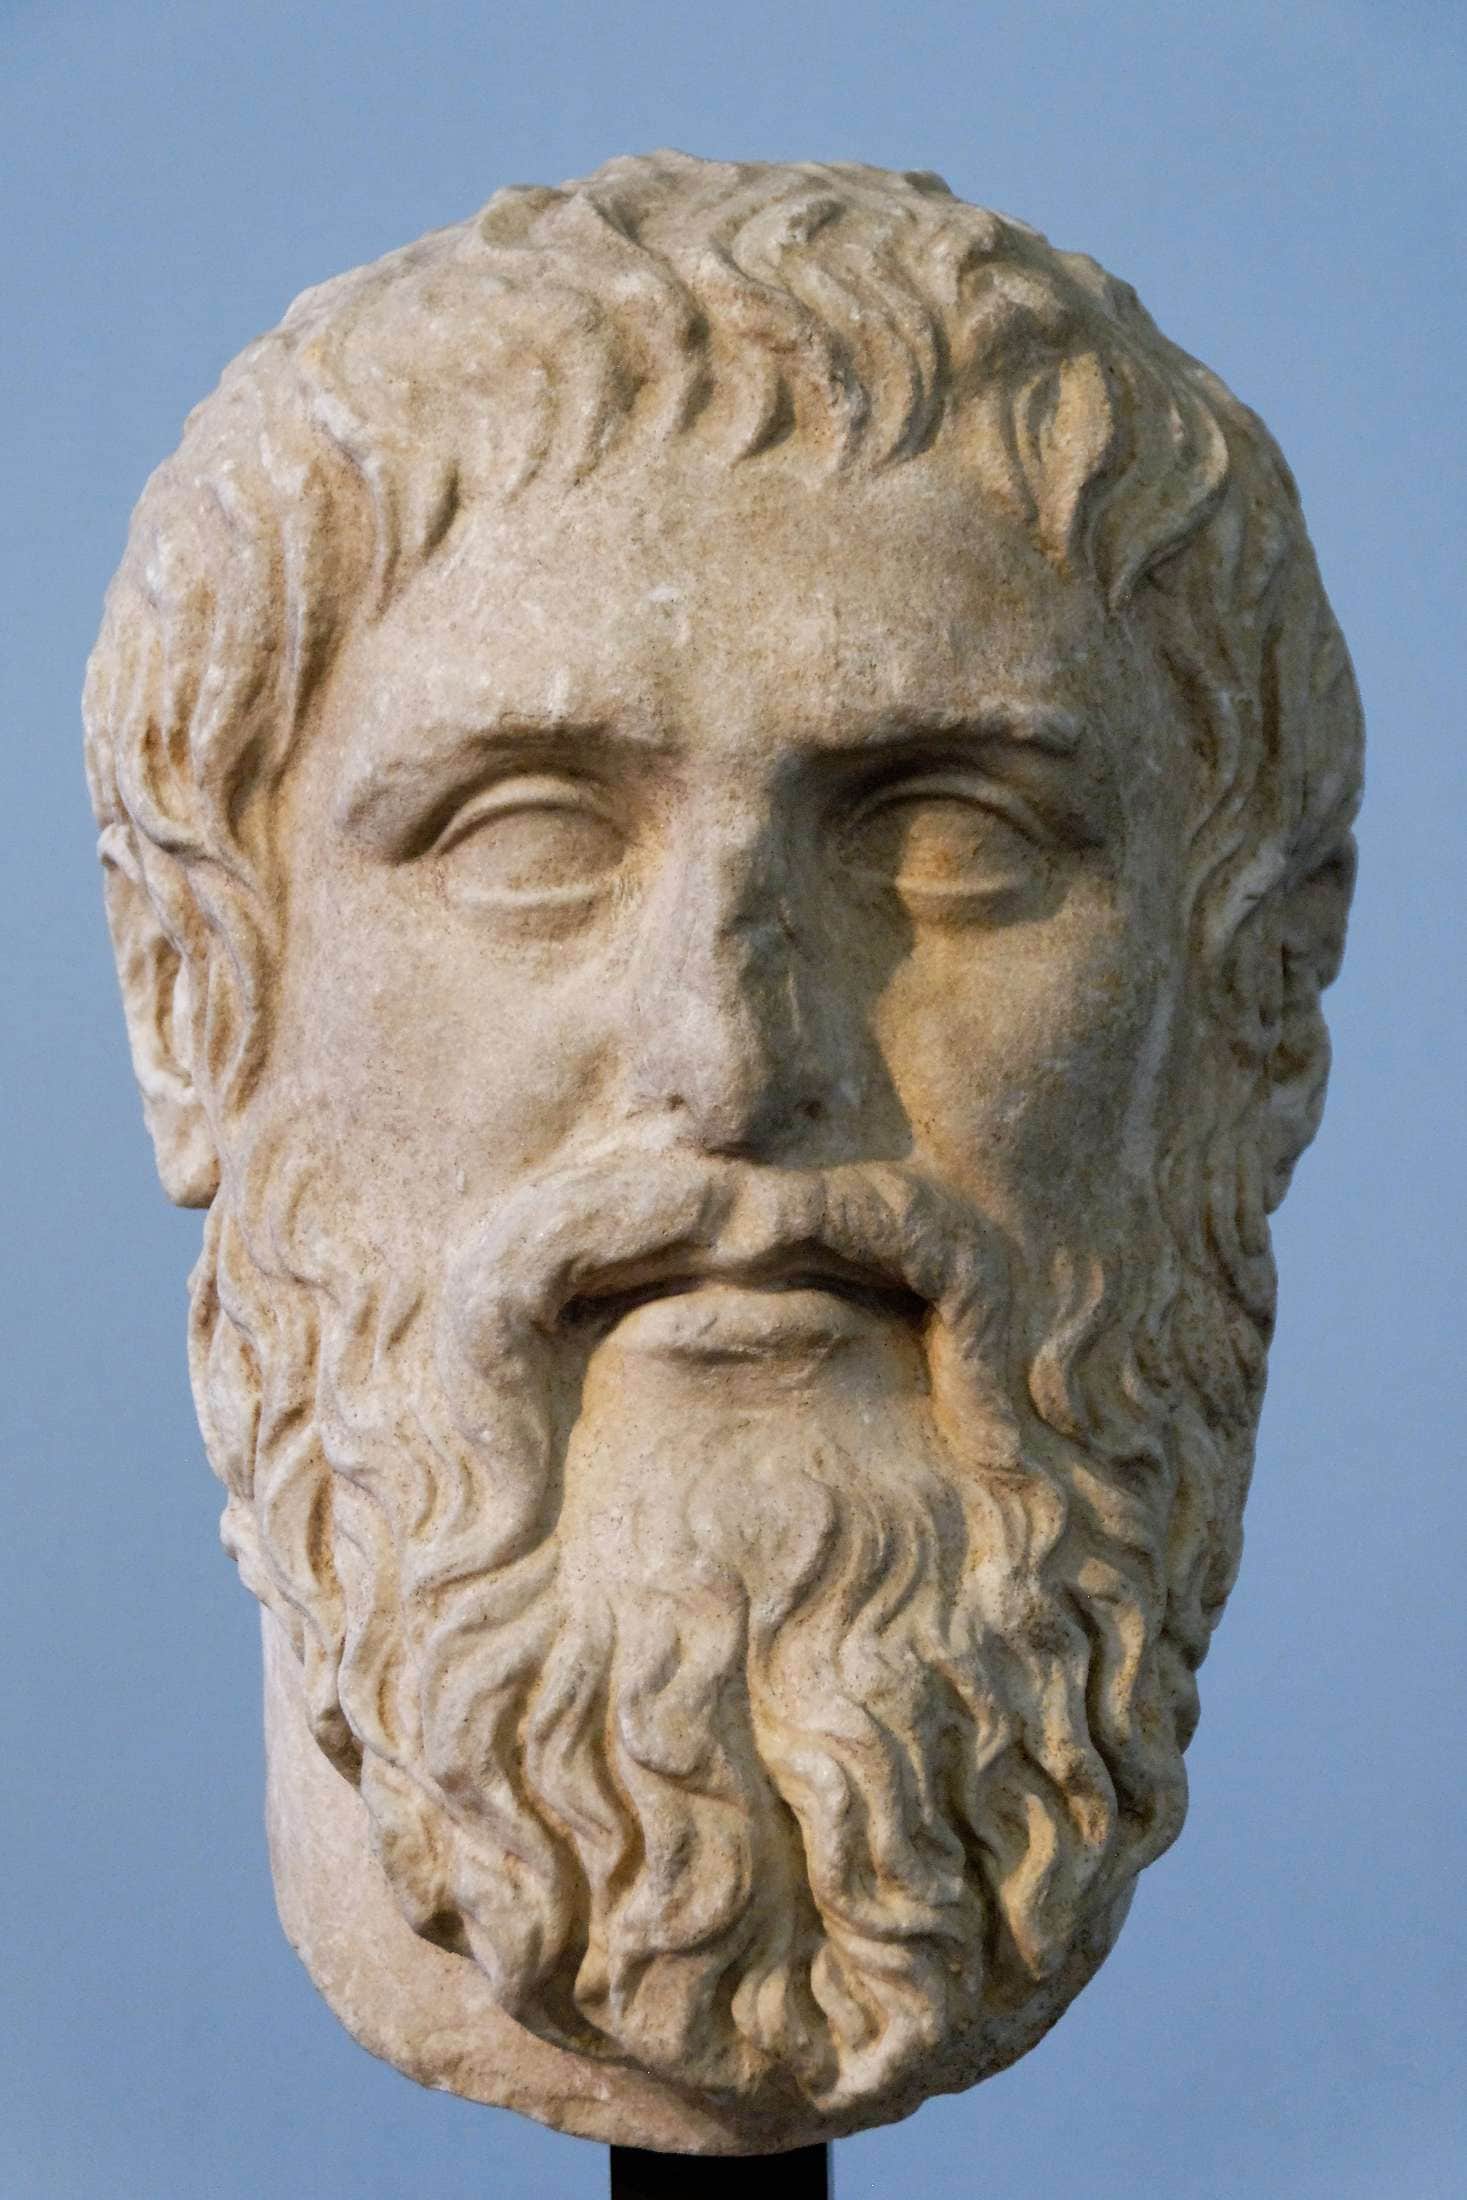 Plato Silanion Musei Capitolini MC1377 2017062210 594b97765ed68